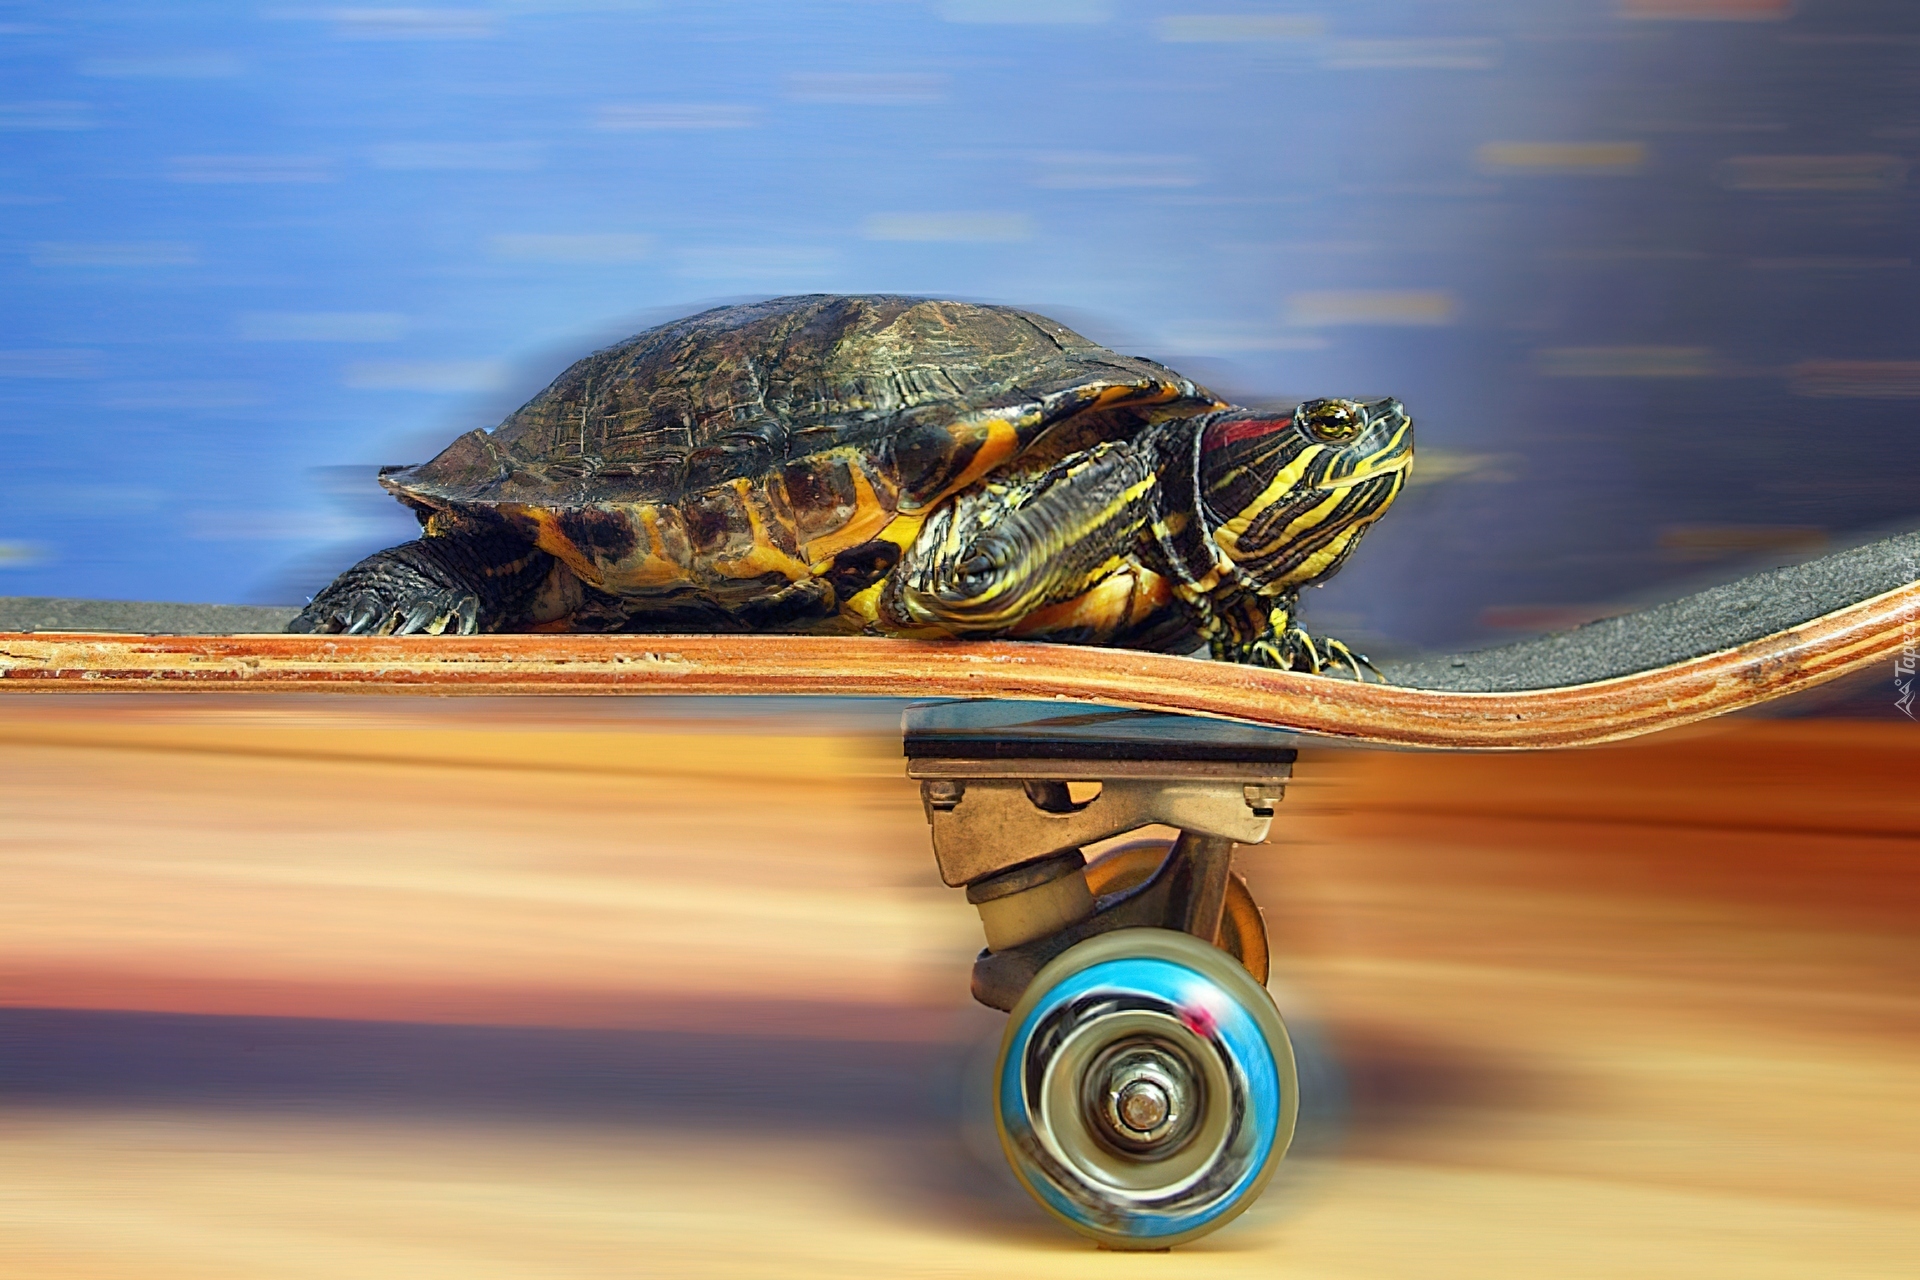 Черепаха ползет со скоростью. Скорость черепахи. Черепаха на колесах. Черепаха на суше. Быстрая черепаха.